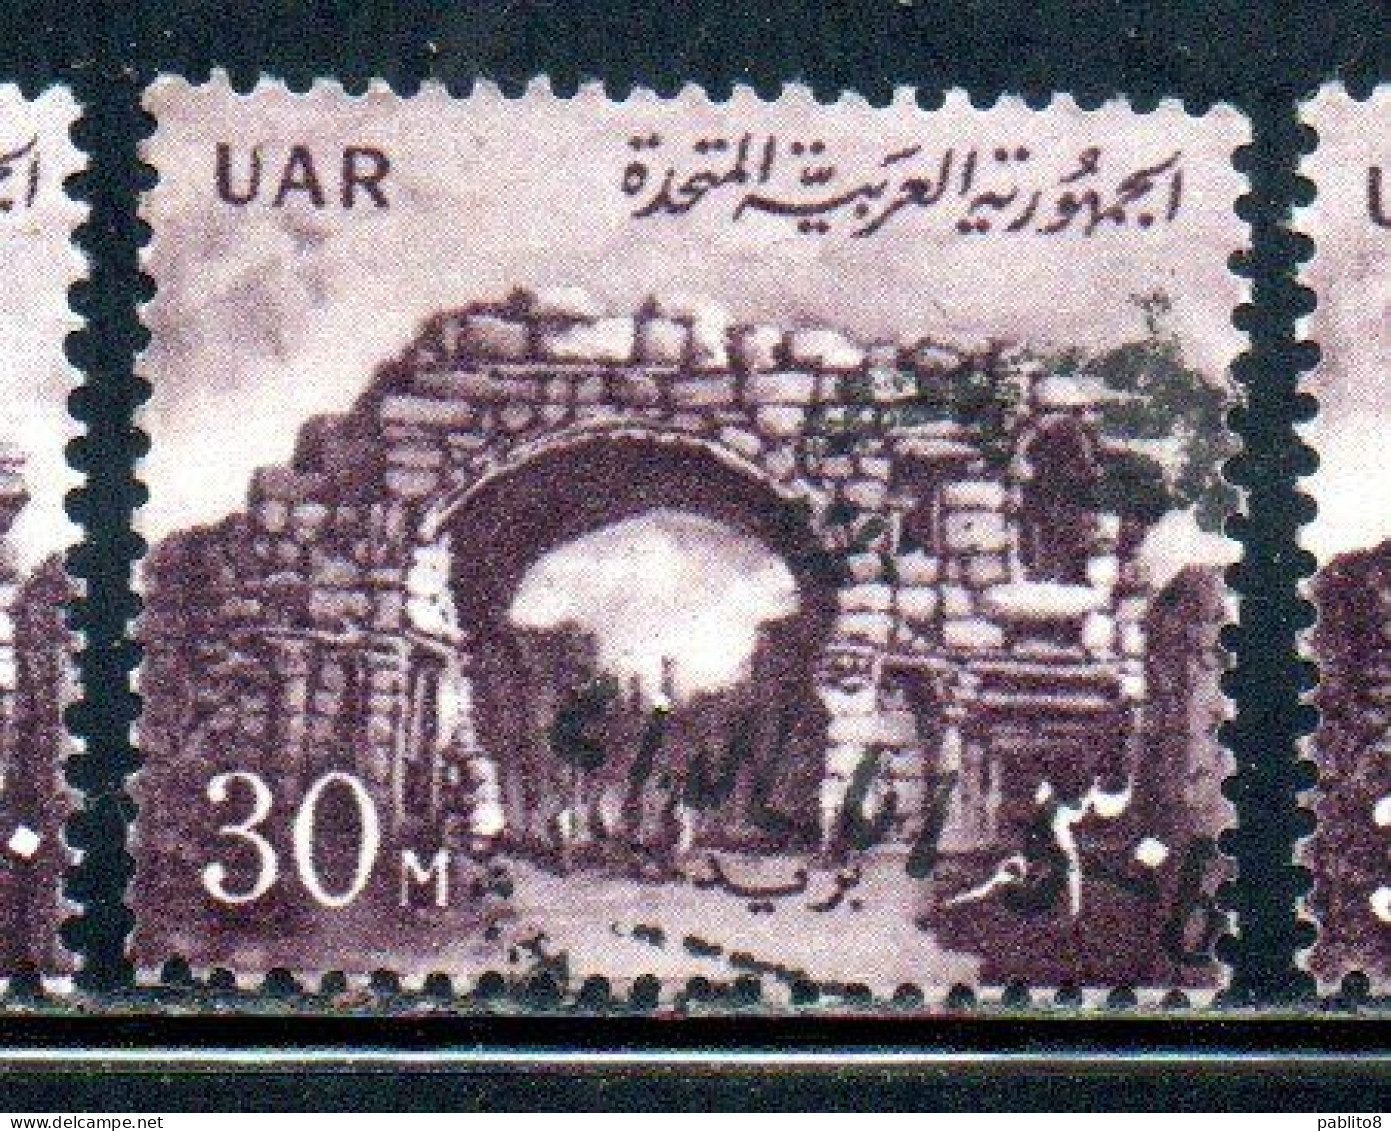 UAR EGYPT EGITTO 1959 1960 ST. SIMON'S GATE BOSRA SYRIA  30m MH - Ungebraucht